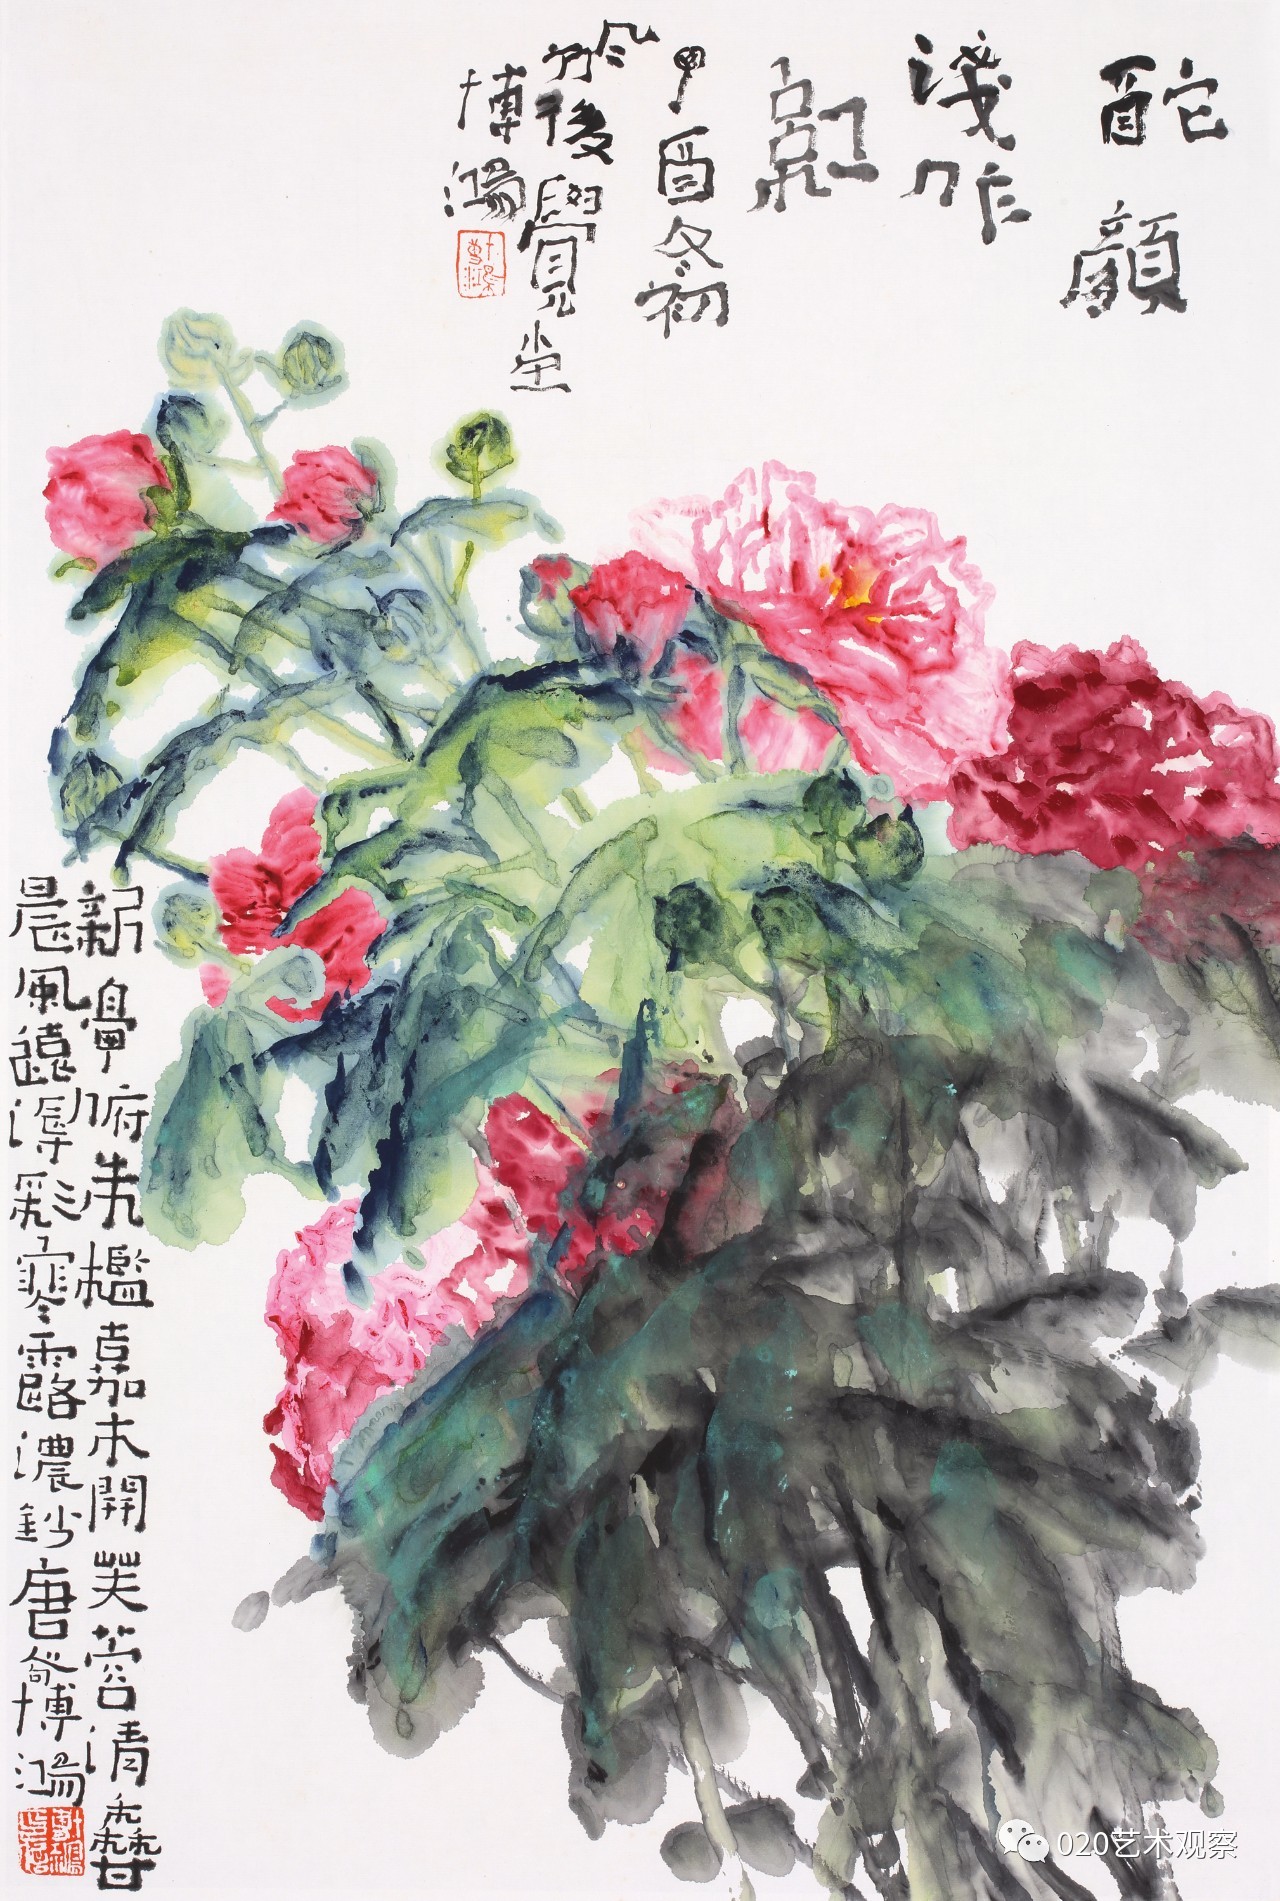 写意精神贾博鸿国画作品展1月21日15时在广州艺博院小佑轩开幕